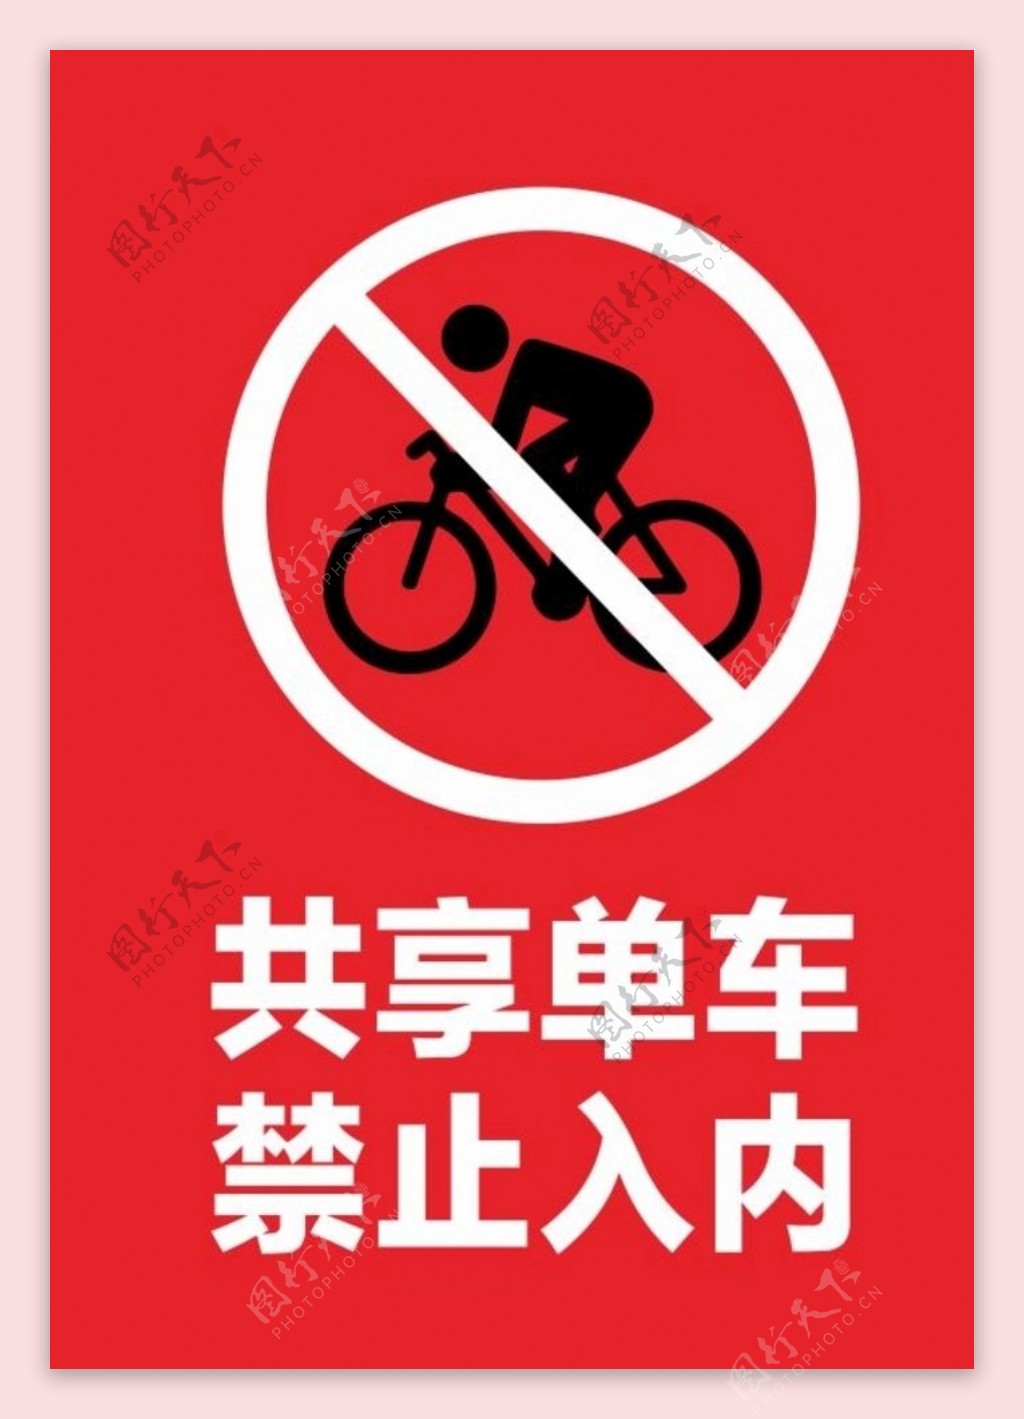 共享单车禁止入内